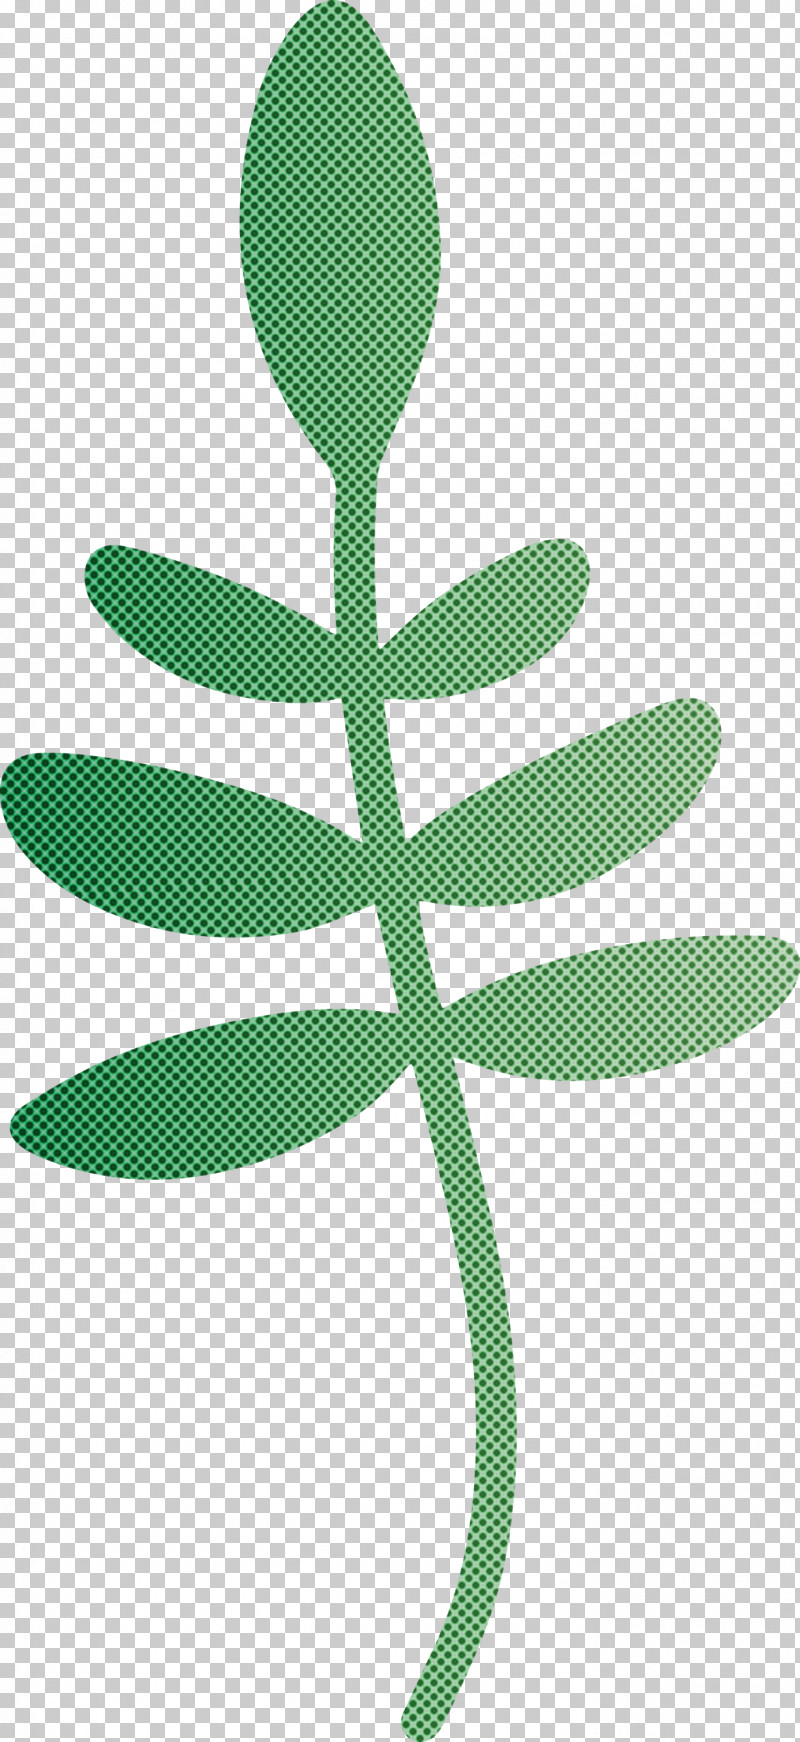 Leaf Plant Stem Tree Flower Green PNG, Clipart, Flower, Green, Leaf, Line, M Free PNG Download